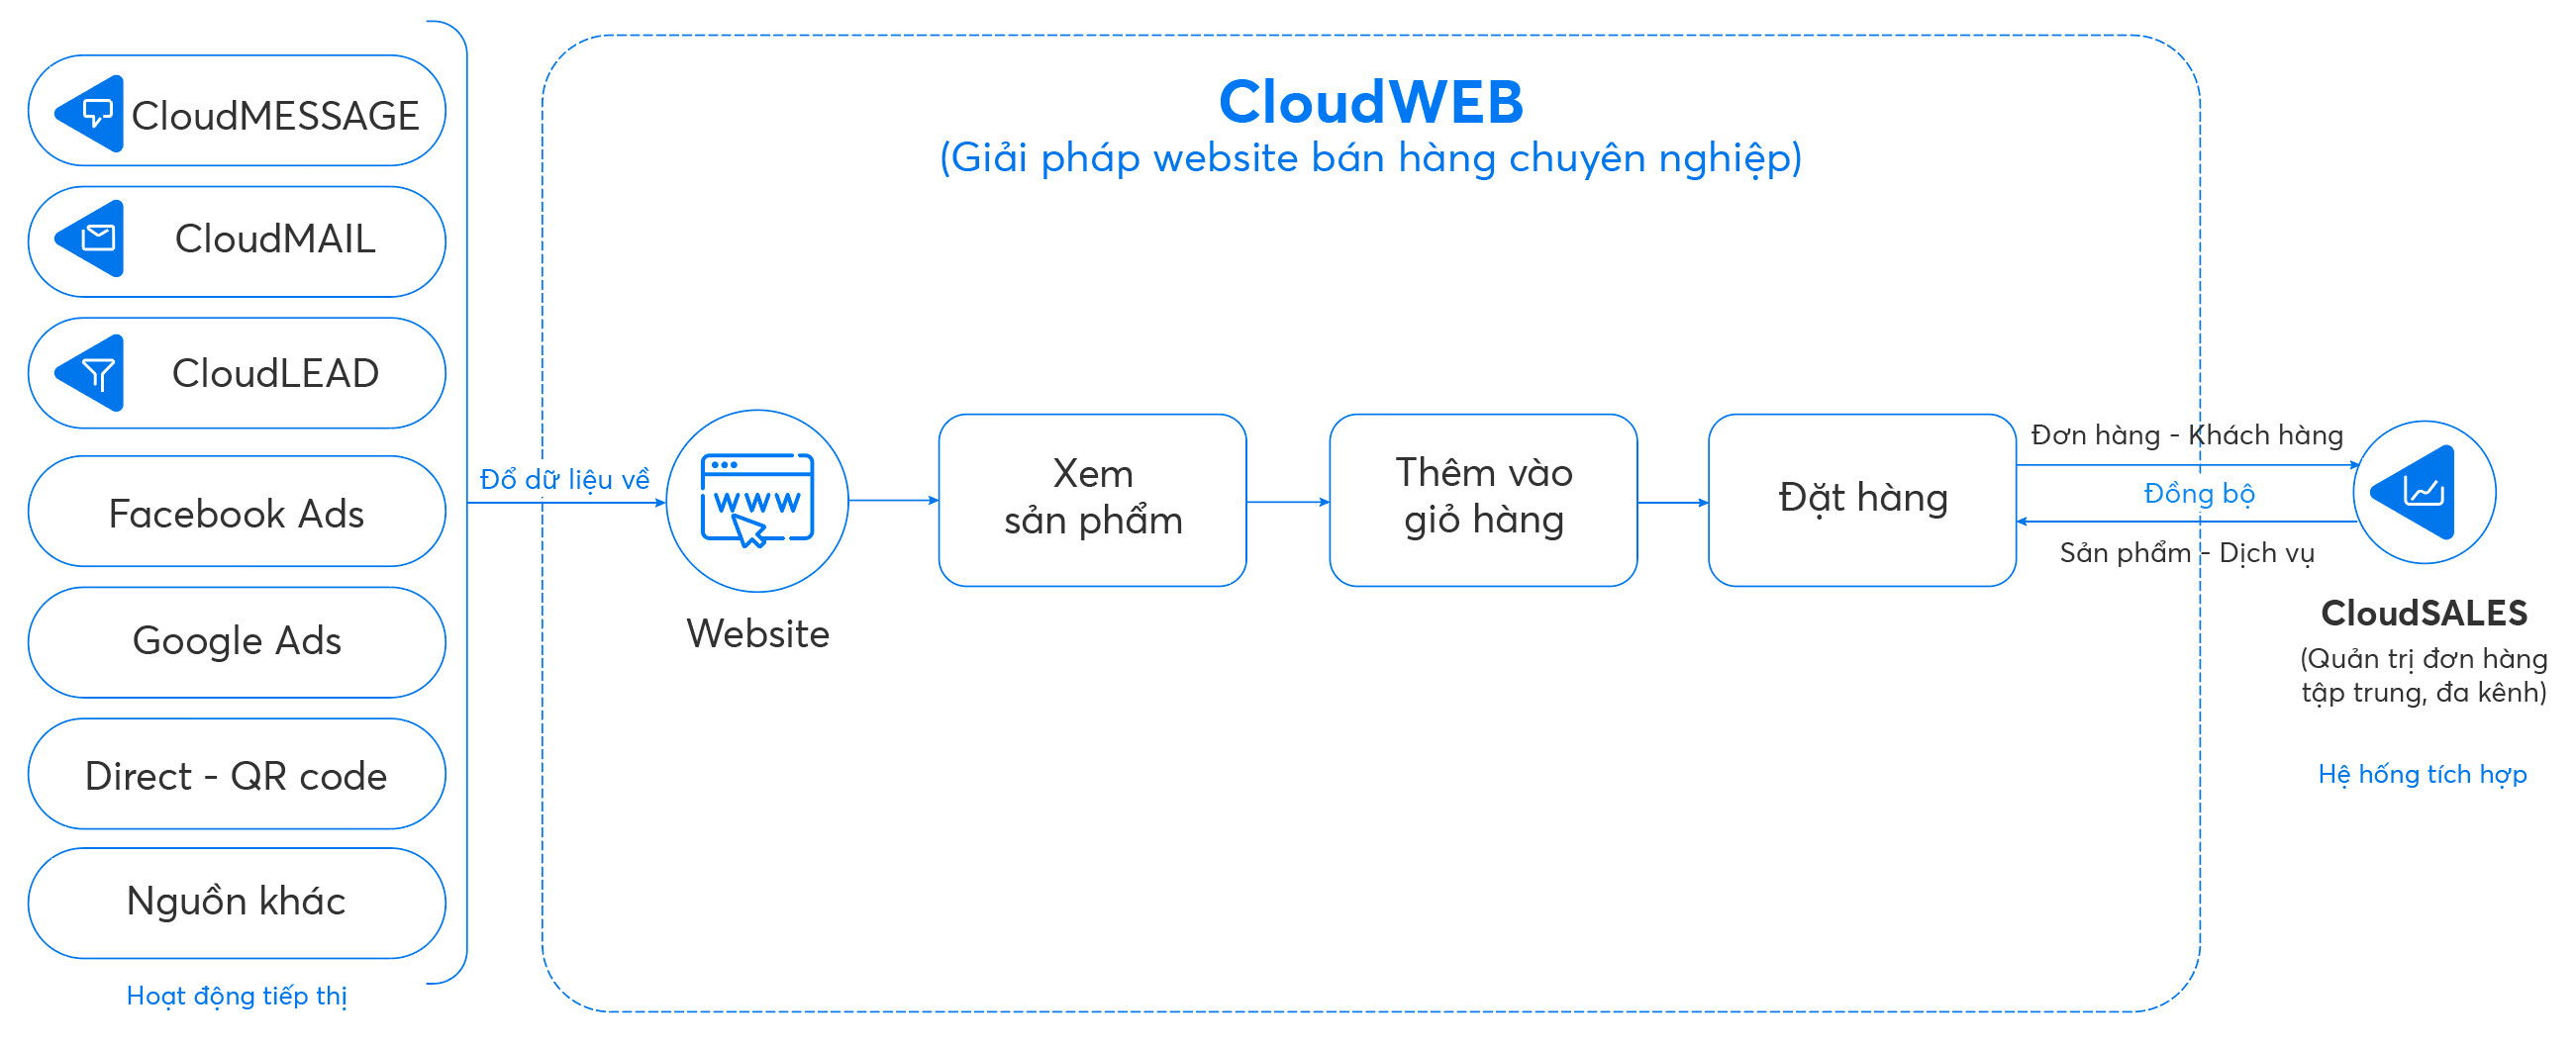 Quy trình sử dụng website bán hàng chuyên nghiệp bằng CloudWEB